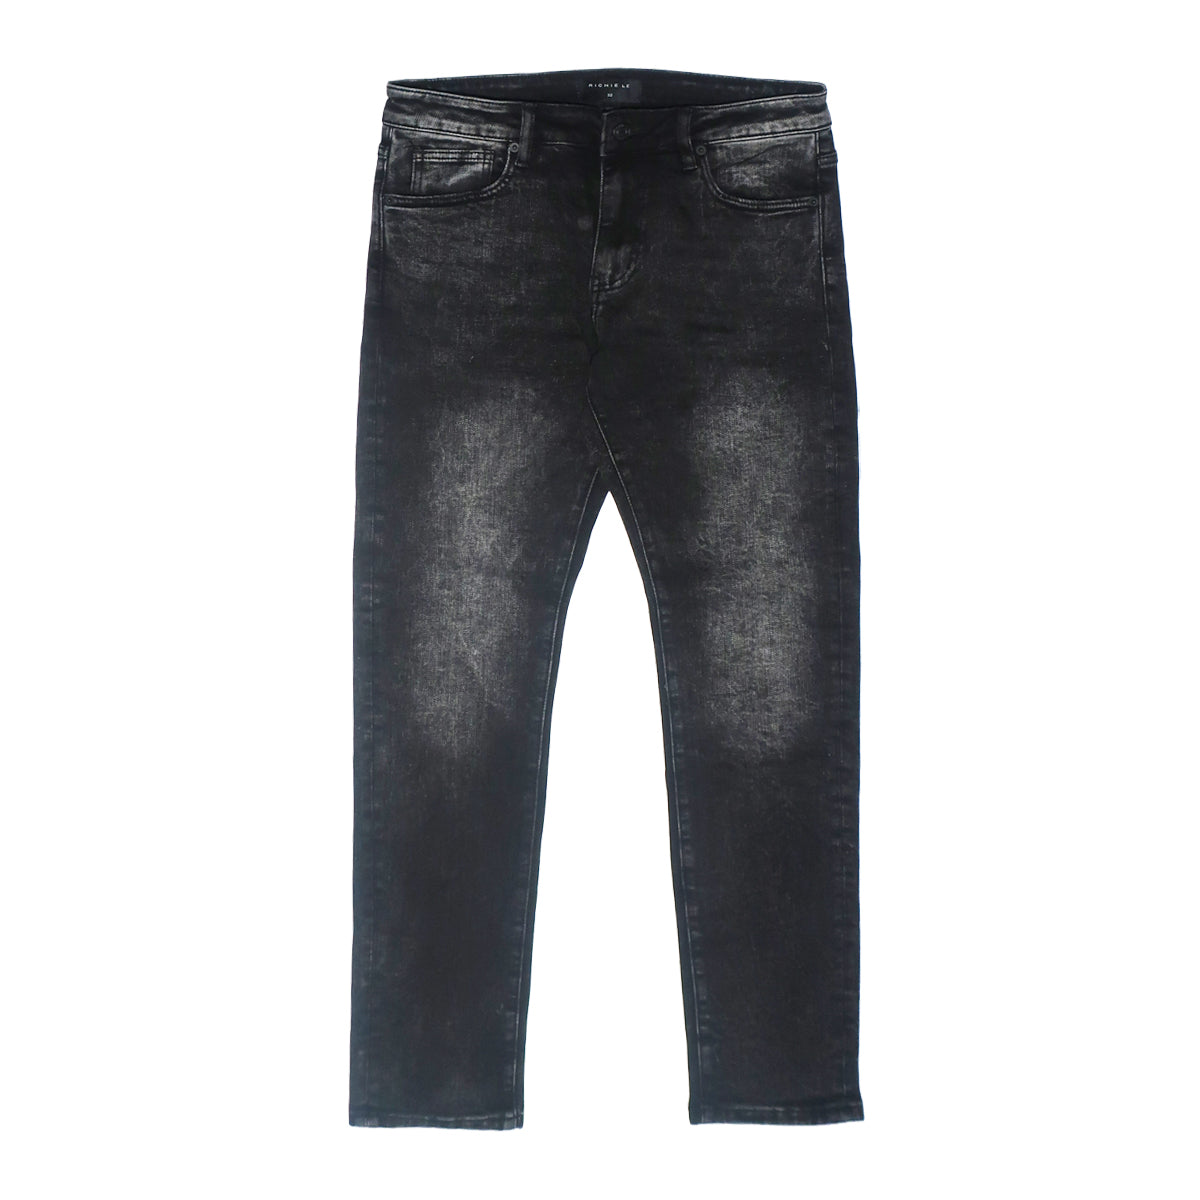 Richie Li - Black Wash Jeans - RLC-108